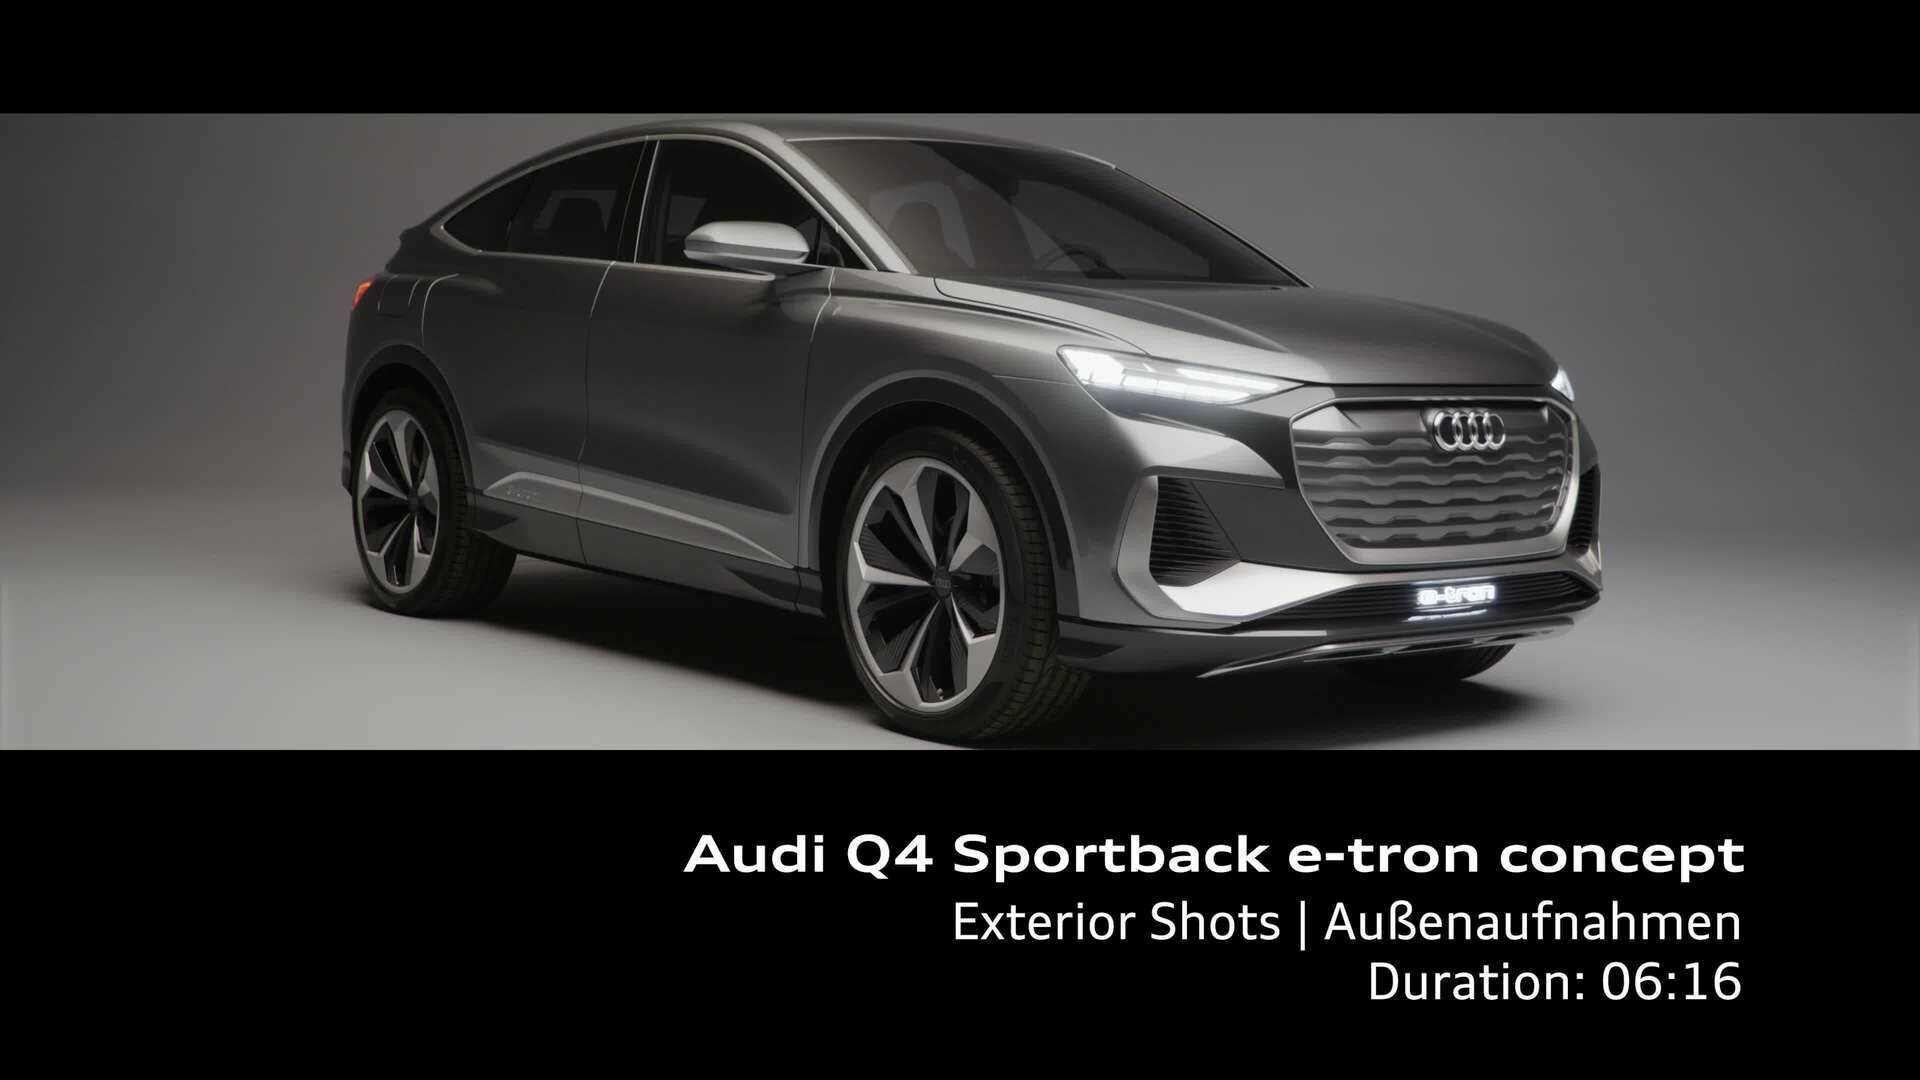 Footage: Audi Q4 Sportback e-tron concept in the studio